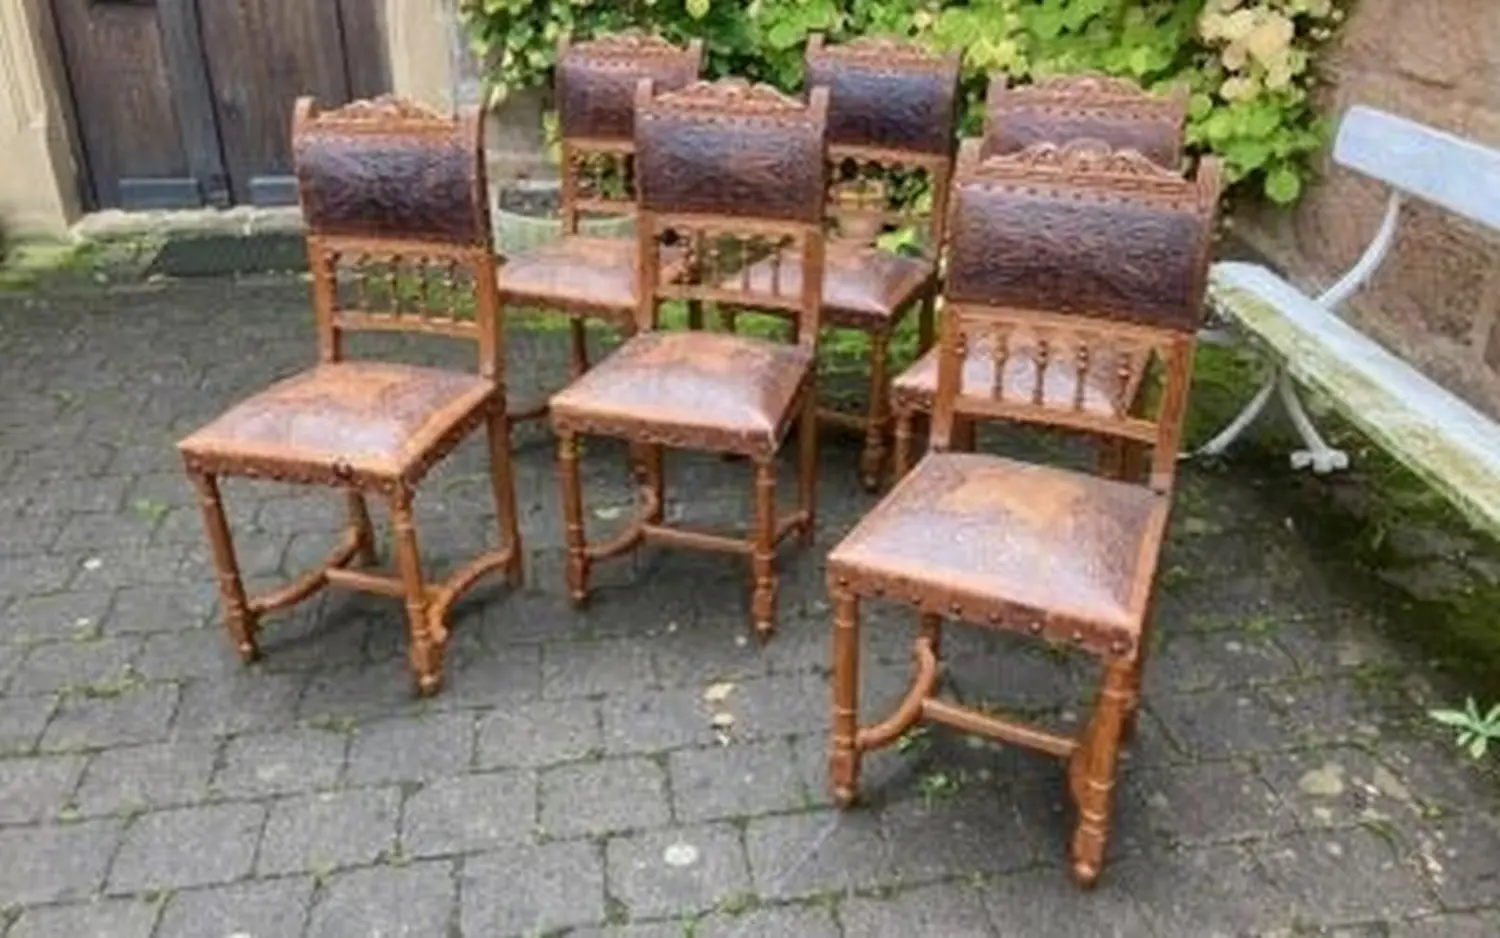 6 Stühle Frankreich um 1880 von Antik Cleversulzbach